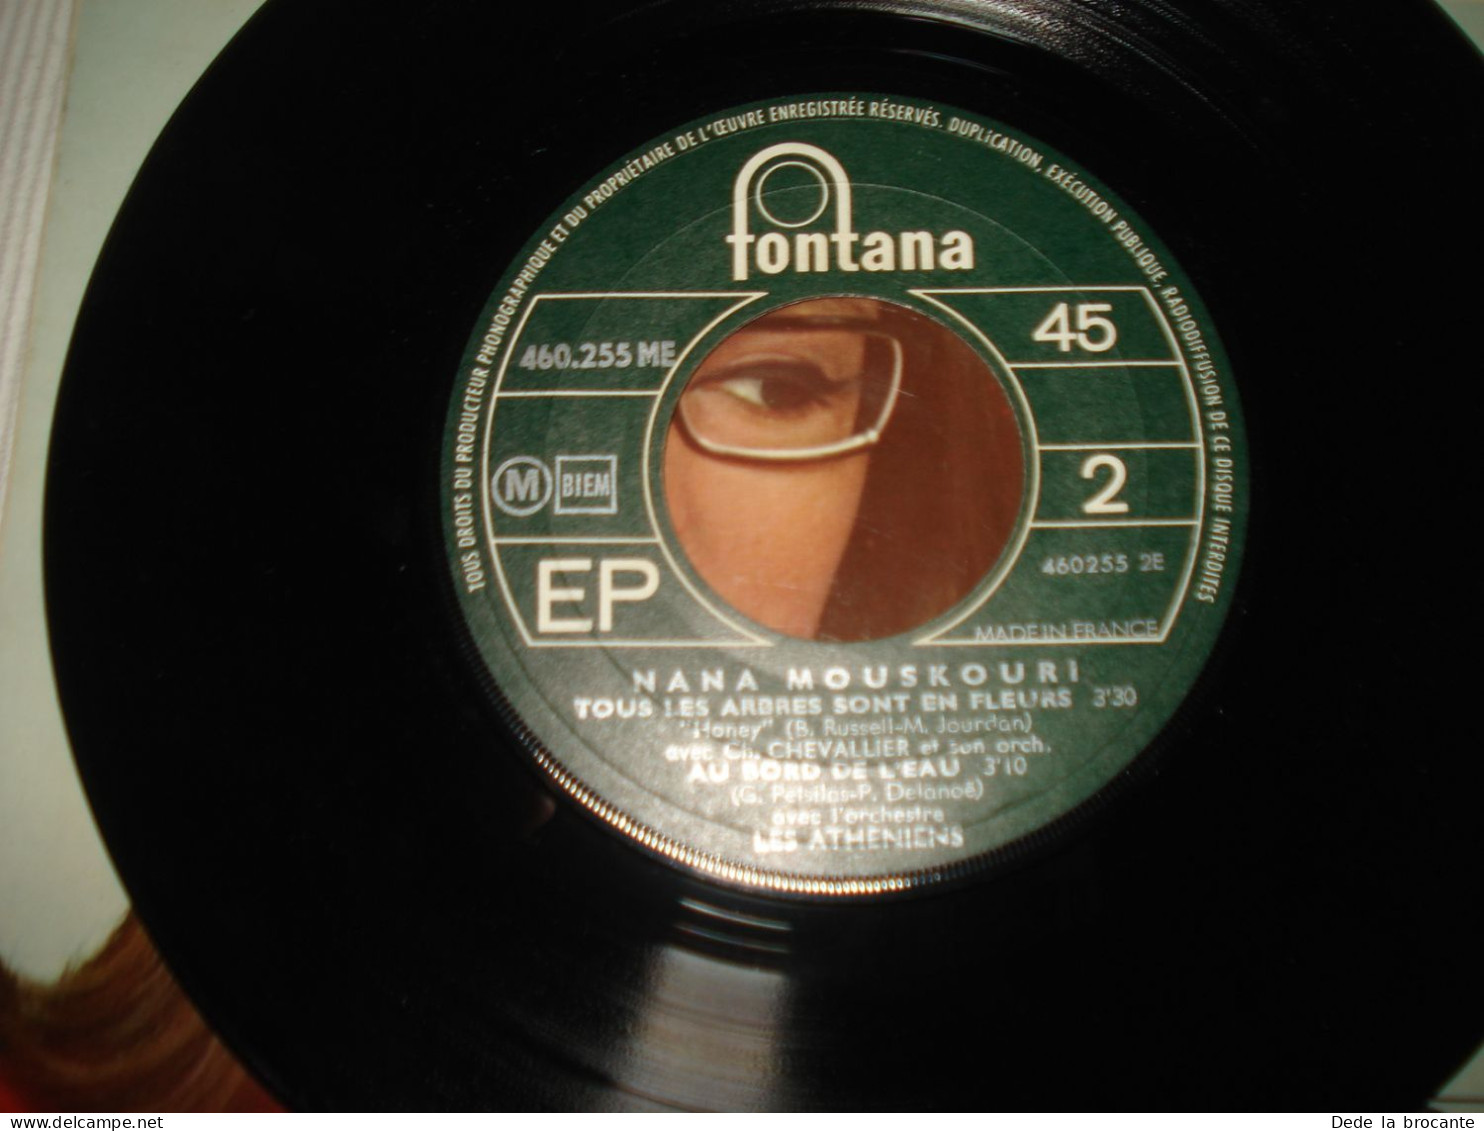 B13 / Nana Mouskouri – Coucourou Paloma - EP – 460 255 ME - Fr 1968  NM/NM - Spezialformate